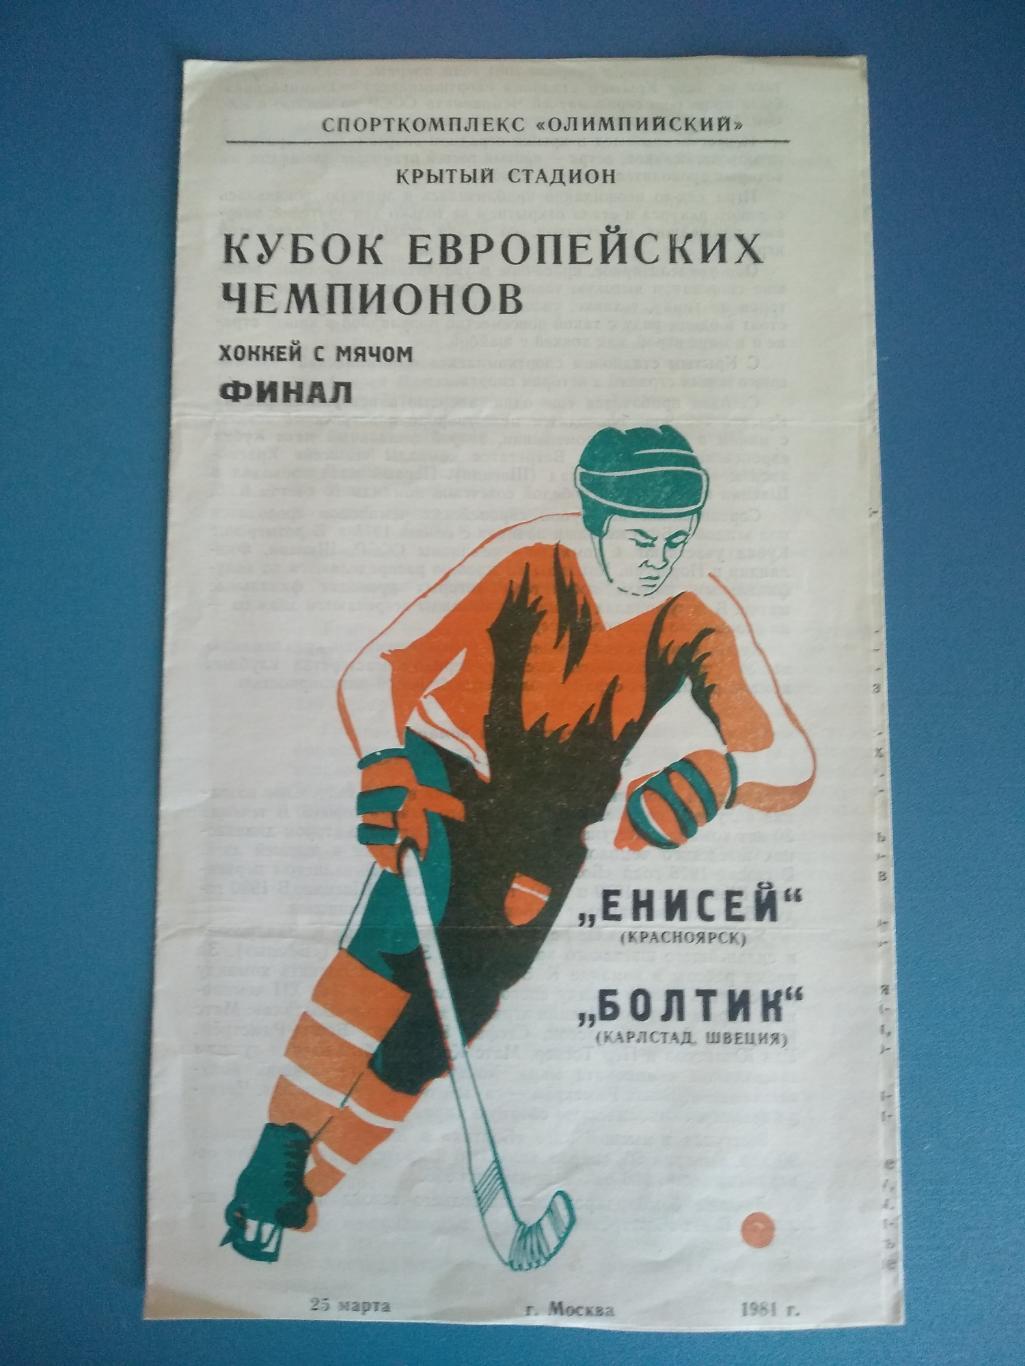 Хоккей с мячом. Финал КЕЧ 1981. Енисей Красноярск - Болтик Швеция 1981